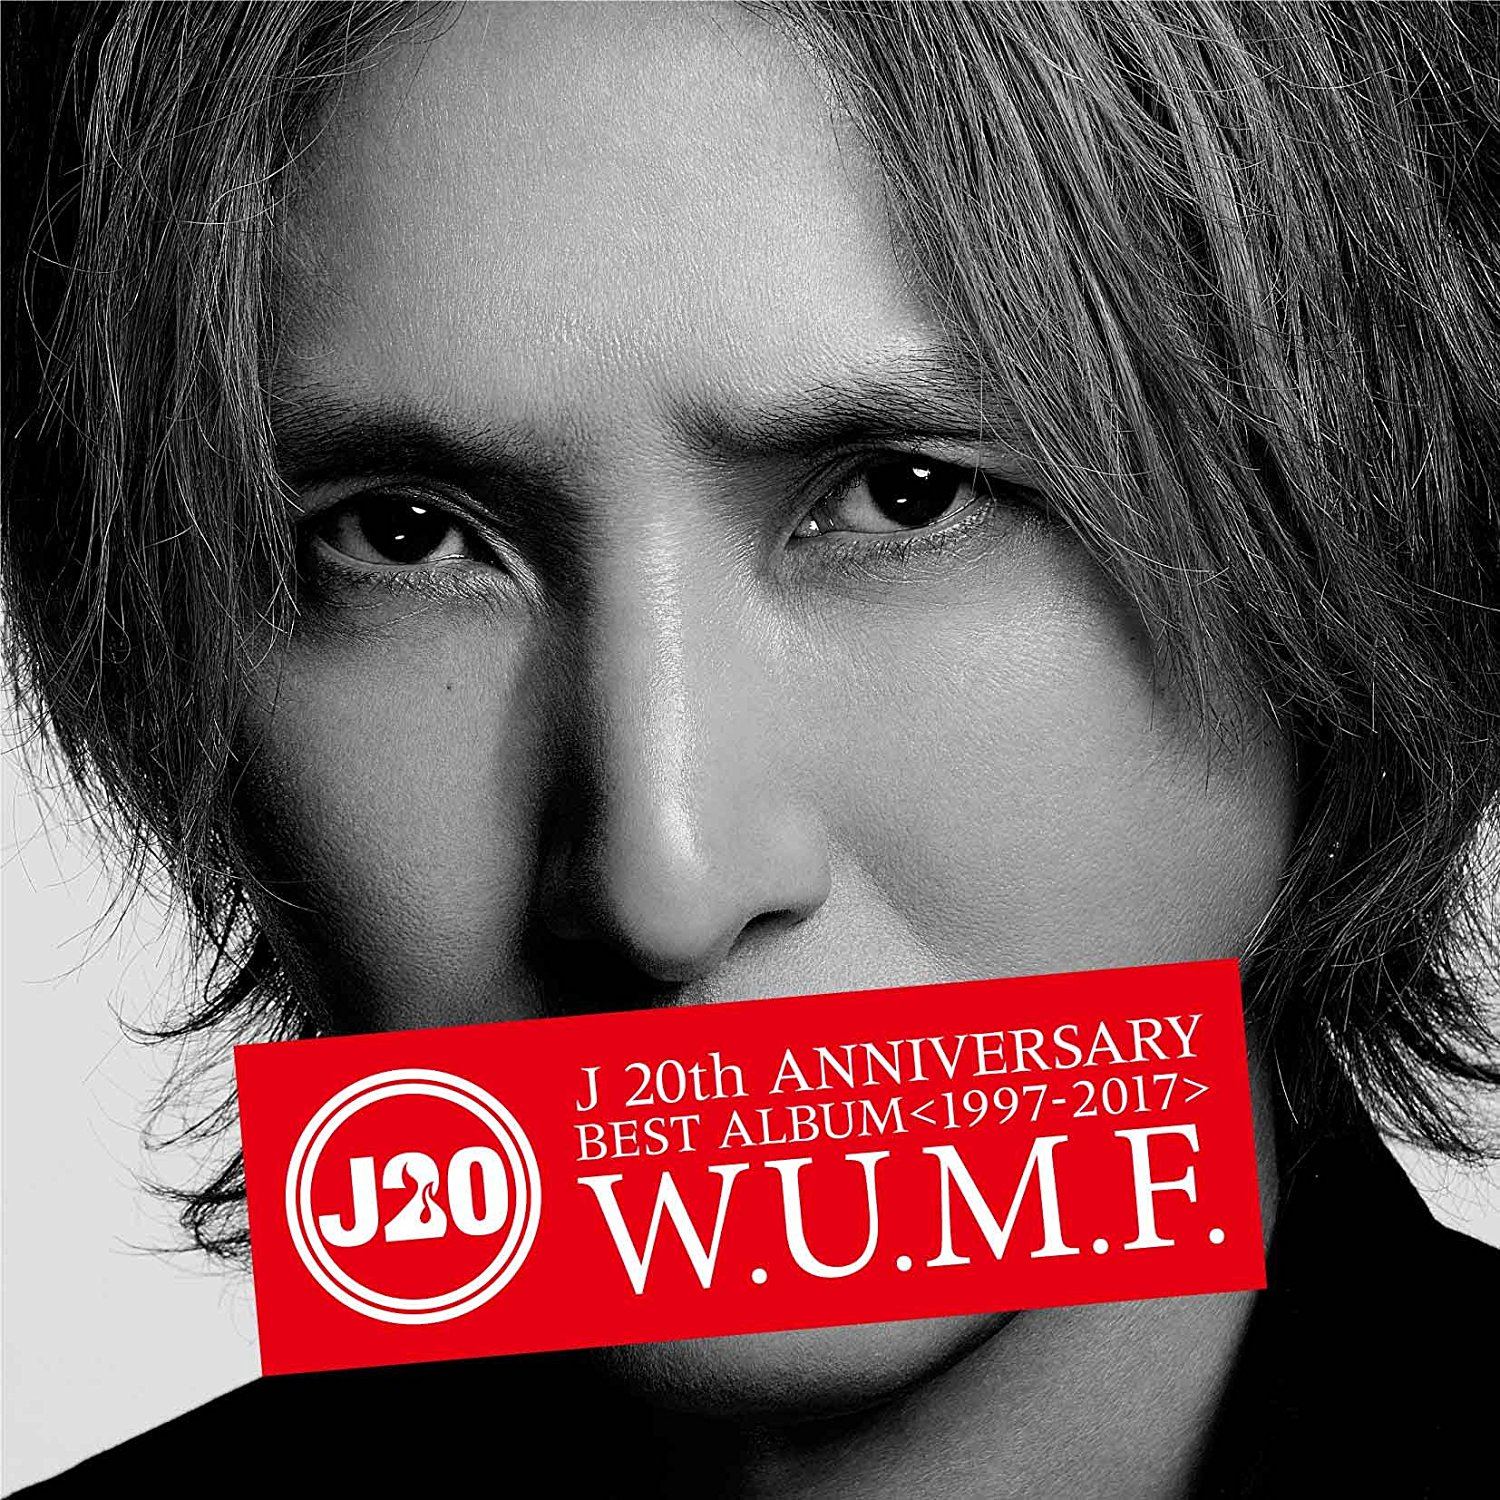 J 20th Anniversary Best Album 1997-2017 W.U.M.F. [2CD+DVD] (J)